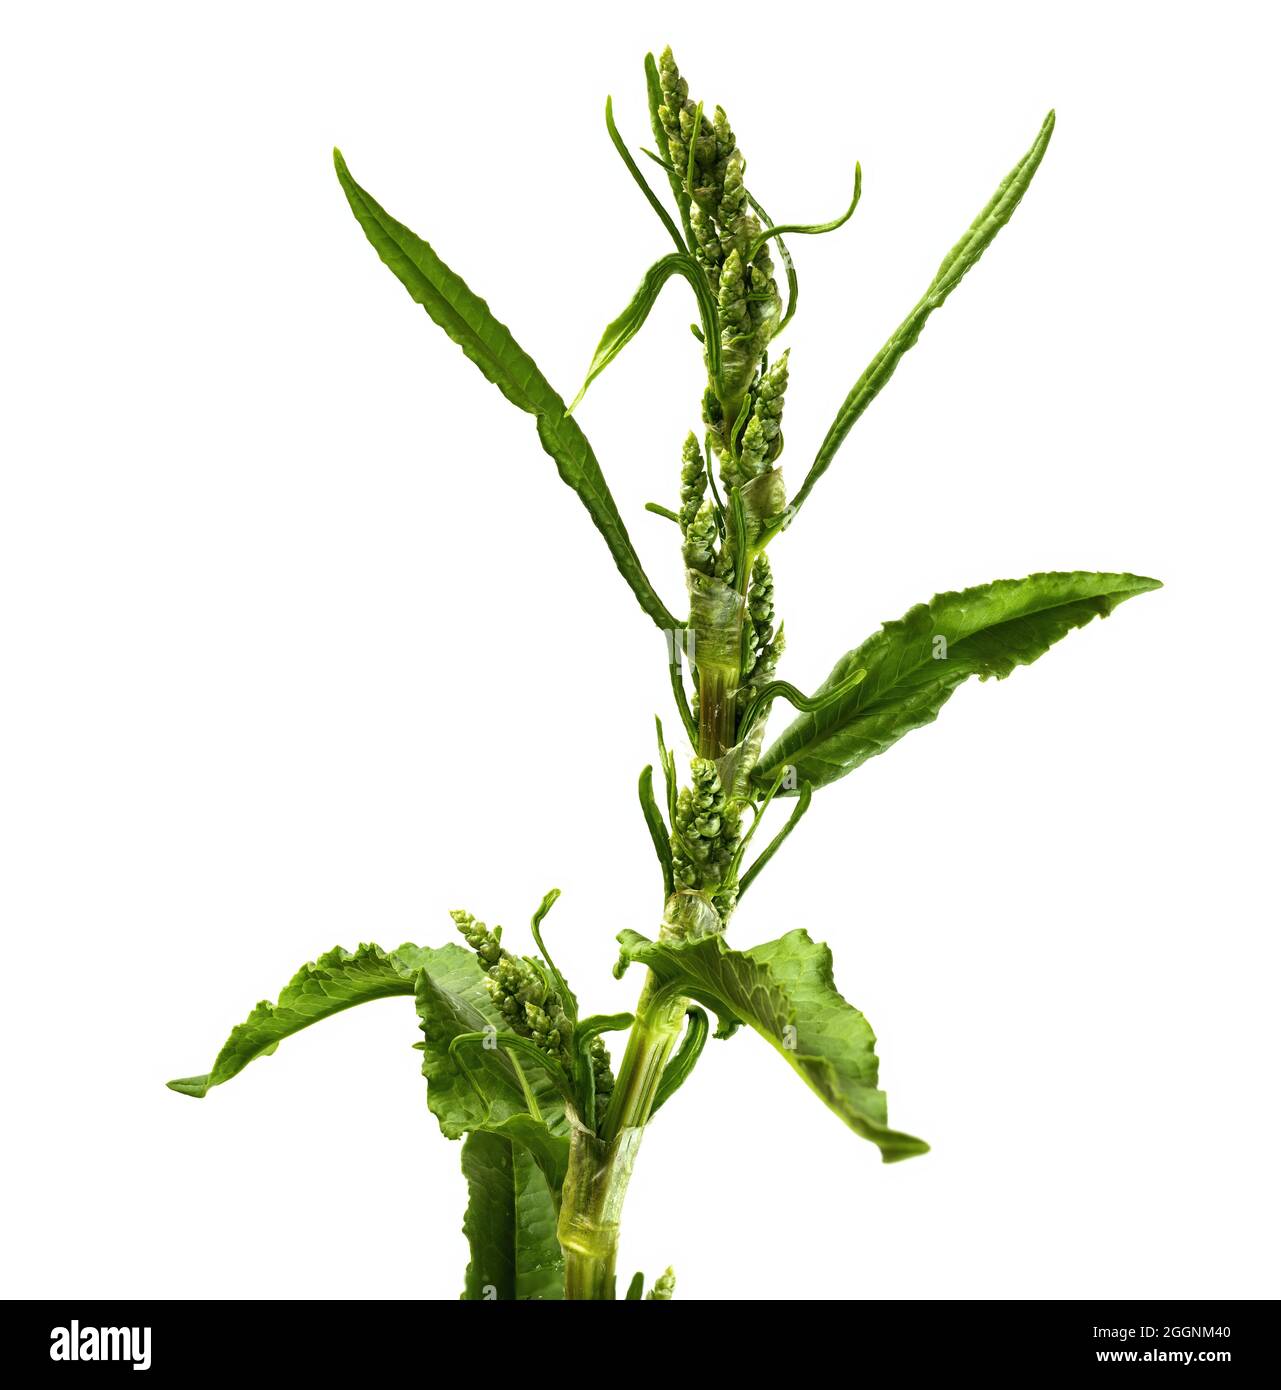 Dysphania ambrosioides, formerly Chenopodium ambrosioides, known as Jesuit tea, Mexican tea, payqu paico, epazote, mastruz, or herba sancta Maria, is Stock Photo